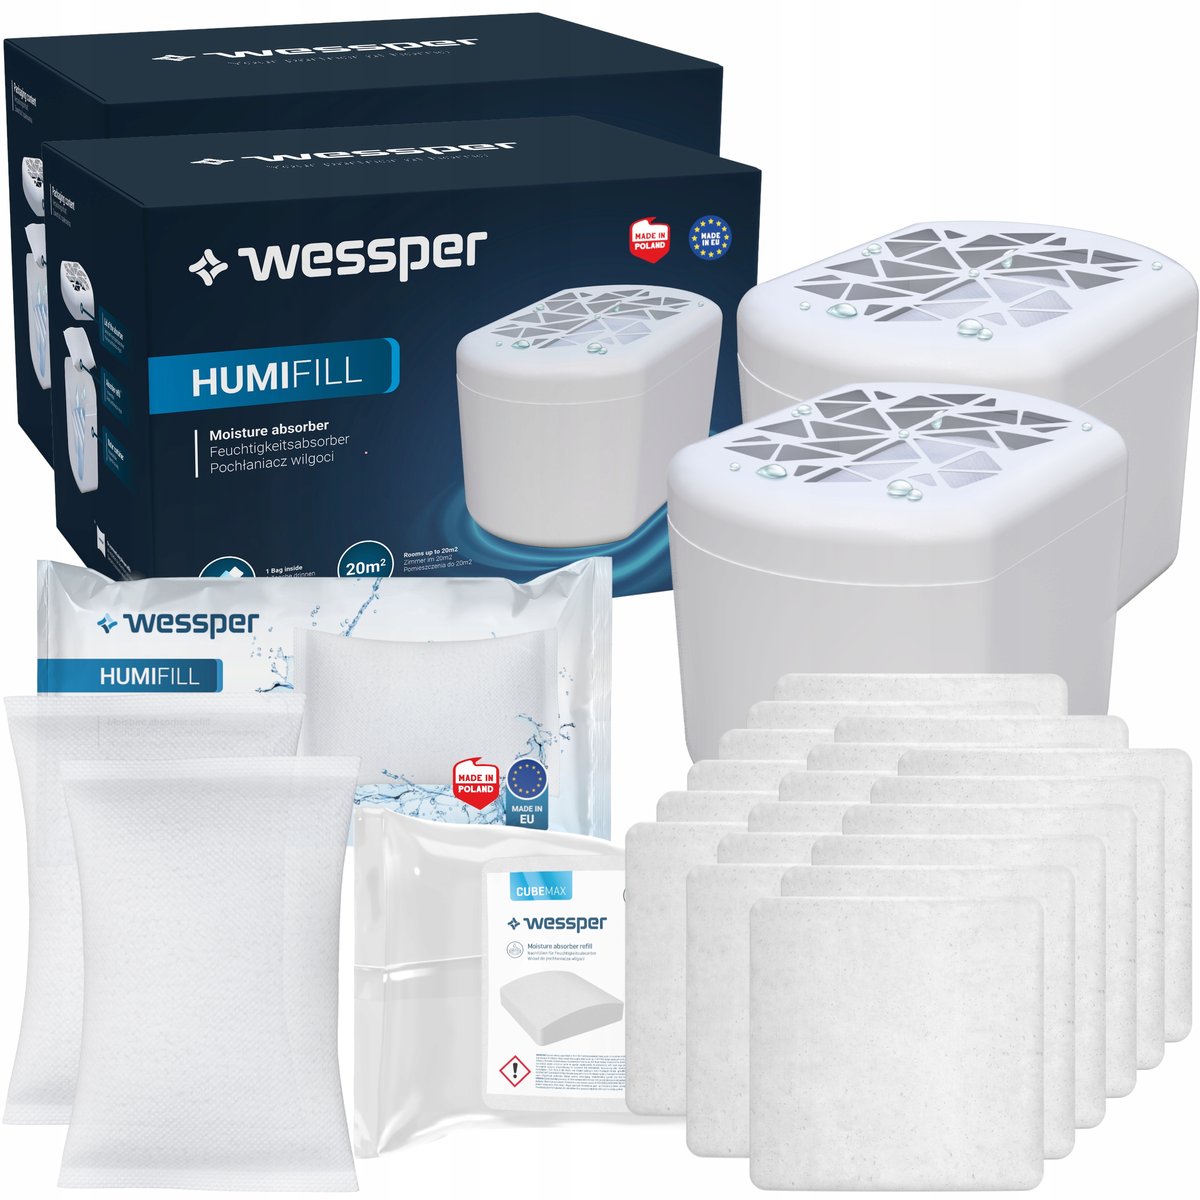 2X Wessper Humifill Pochłaniacz Wilgoci Biały + 2 Wkłady + 18 Tabletek Cubemax Pochłaniających Wilgoć